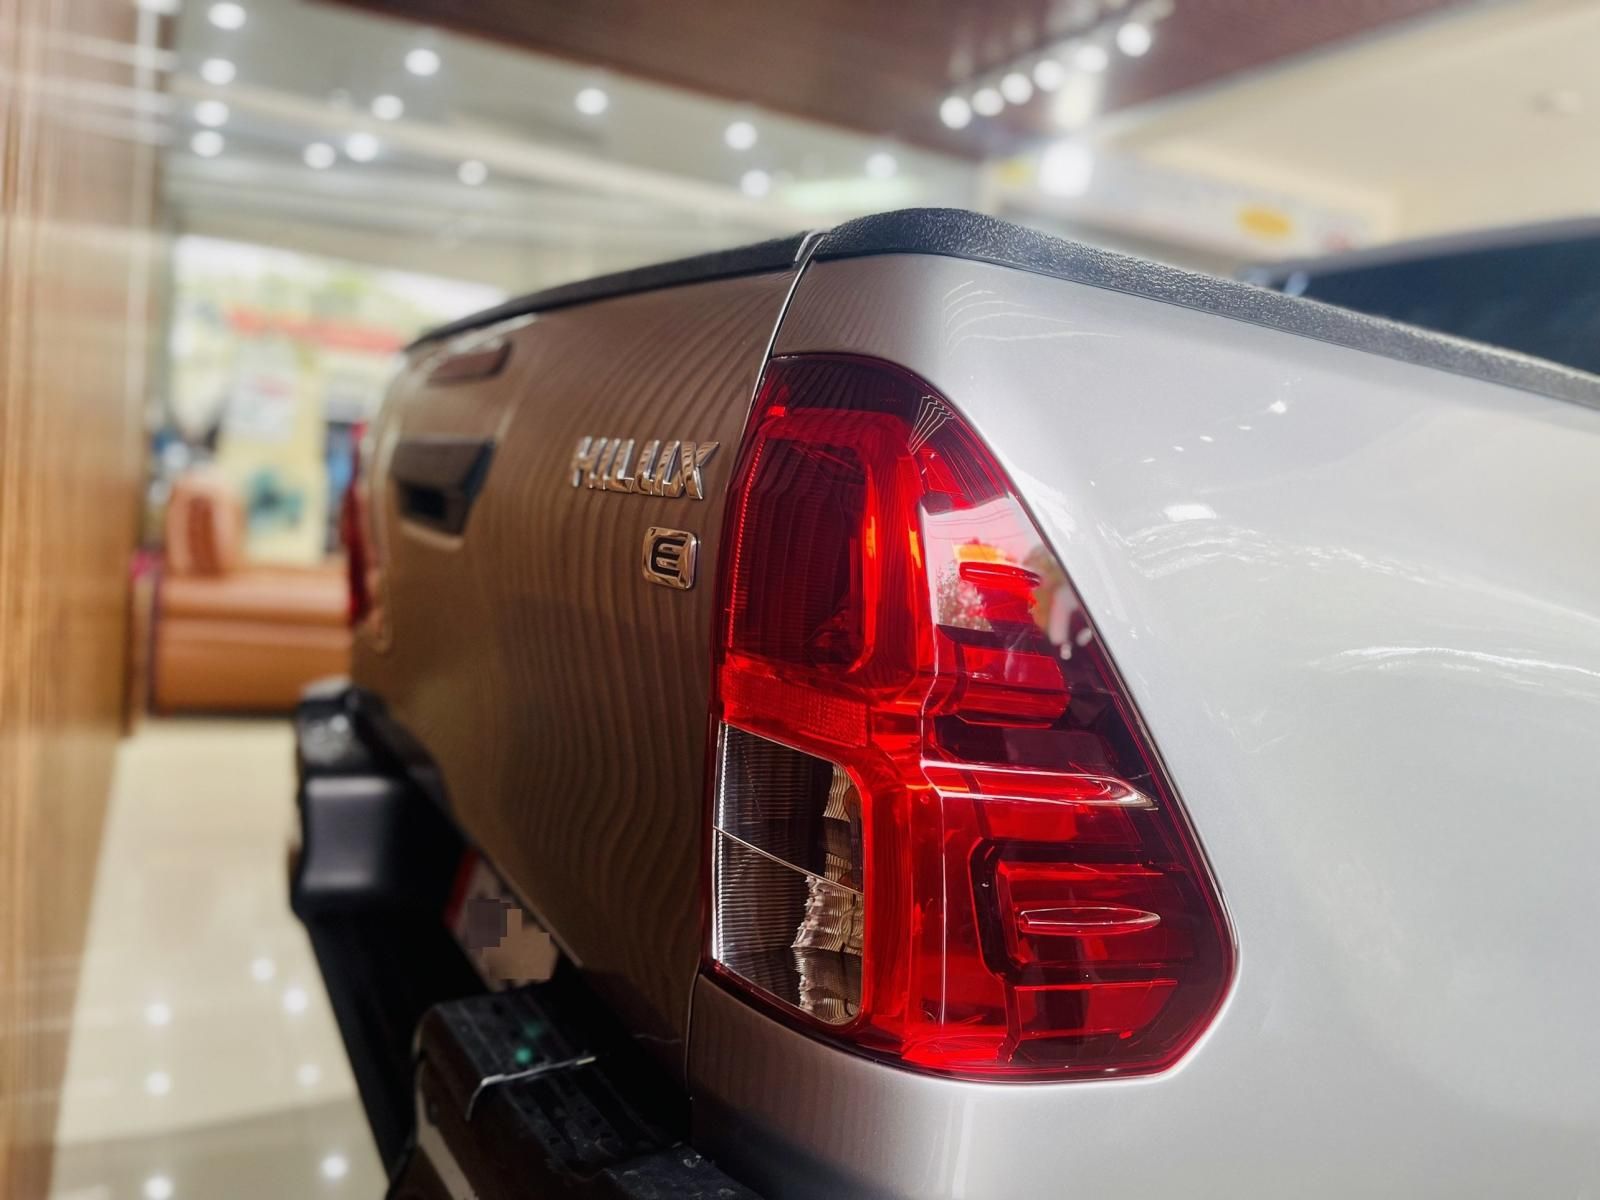 Toyota Hilux 2020 - Cam kết bằng văn bản, xe còn bảo hành